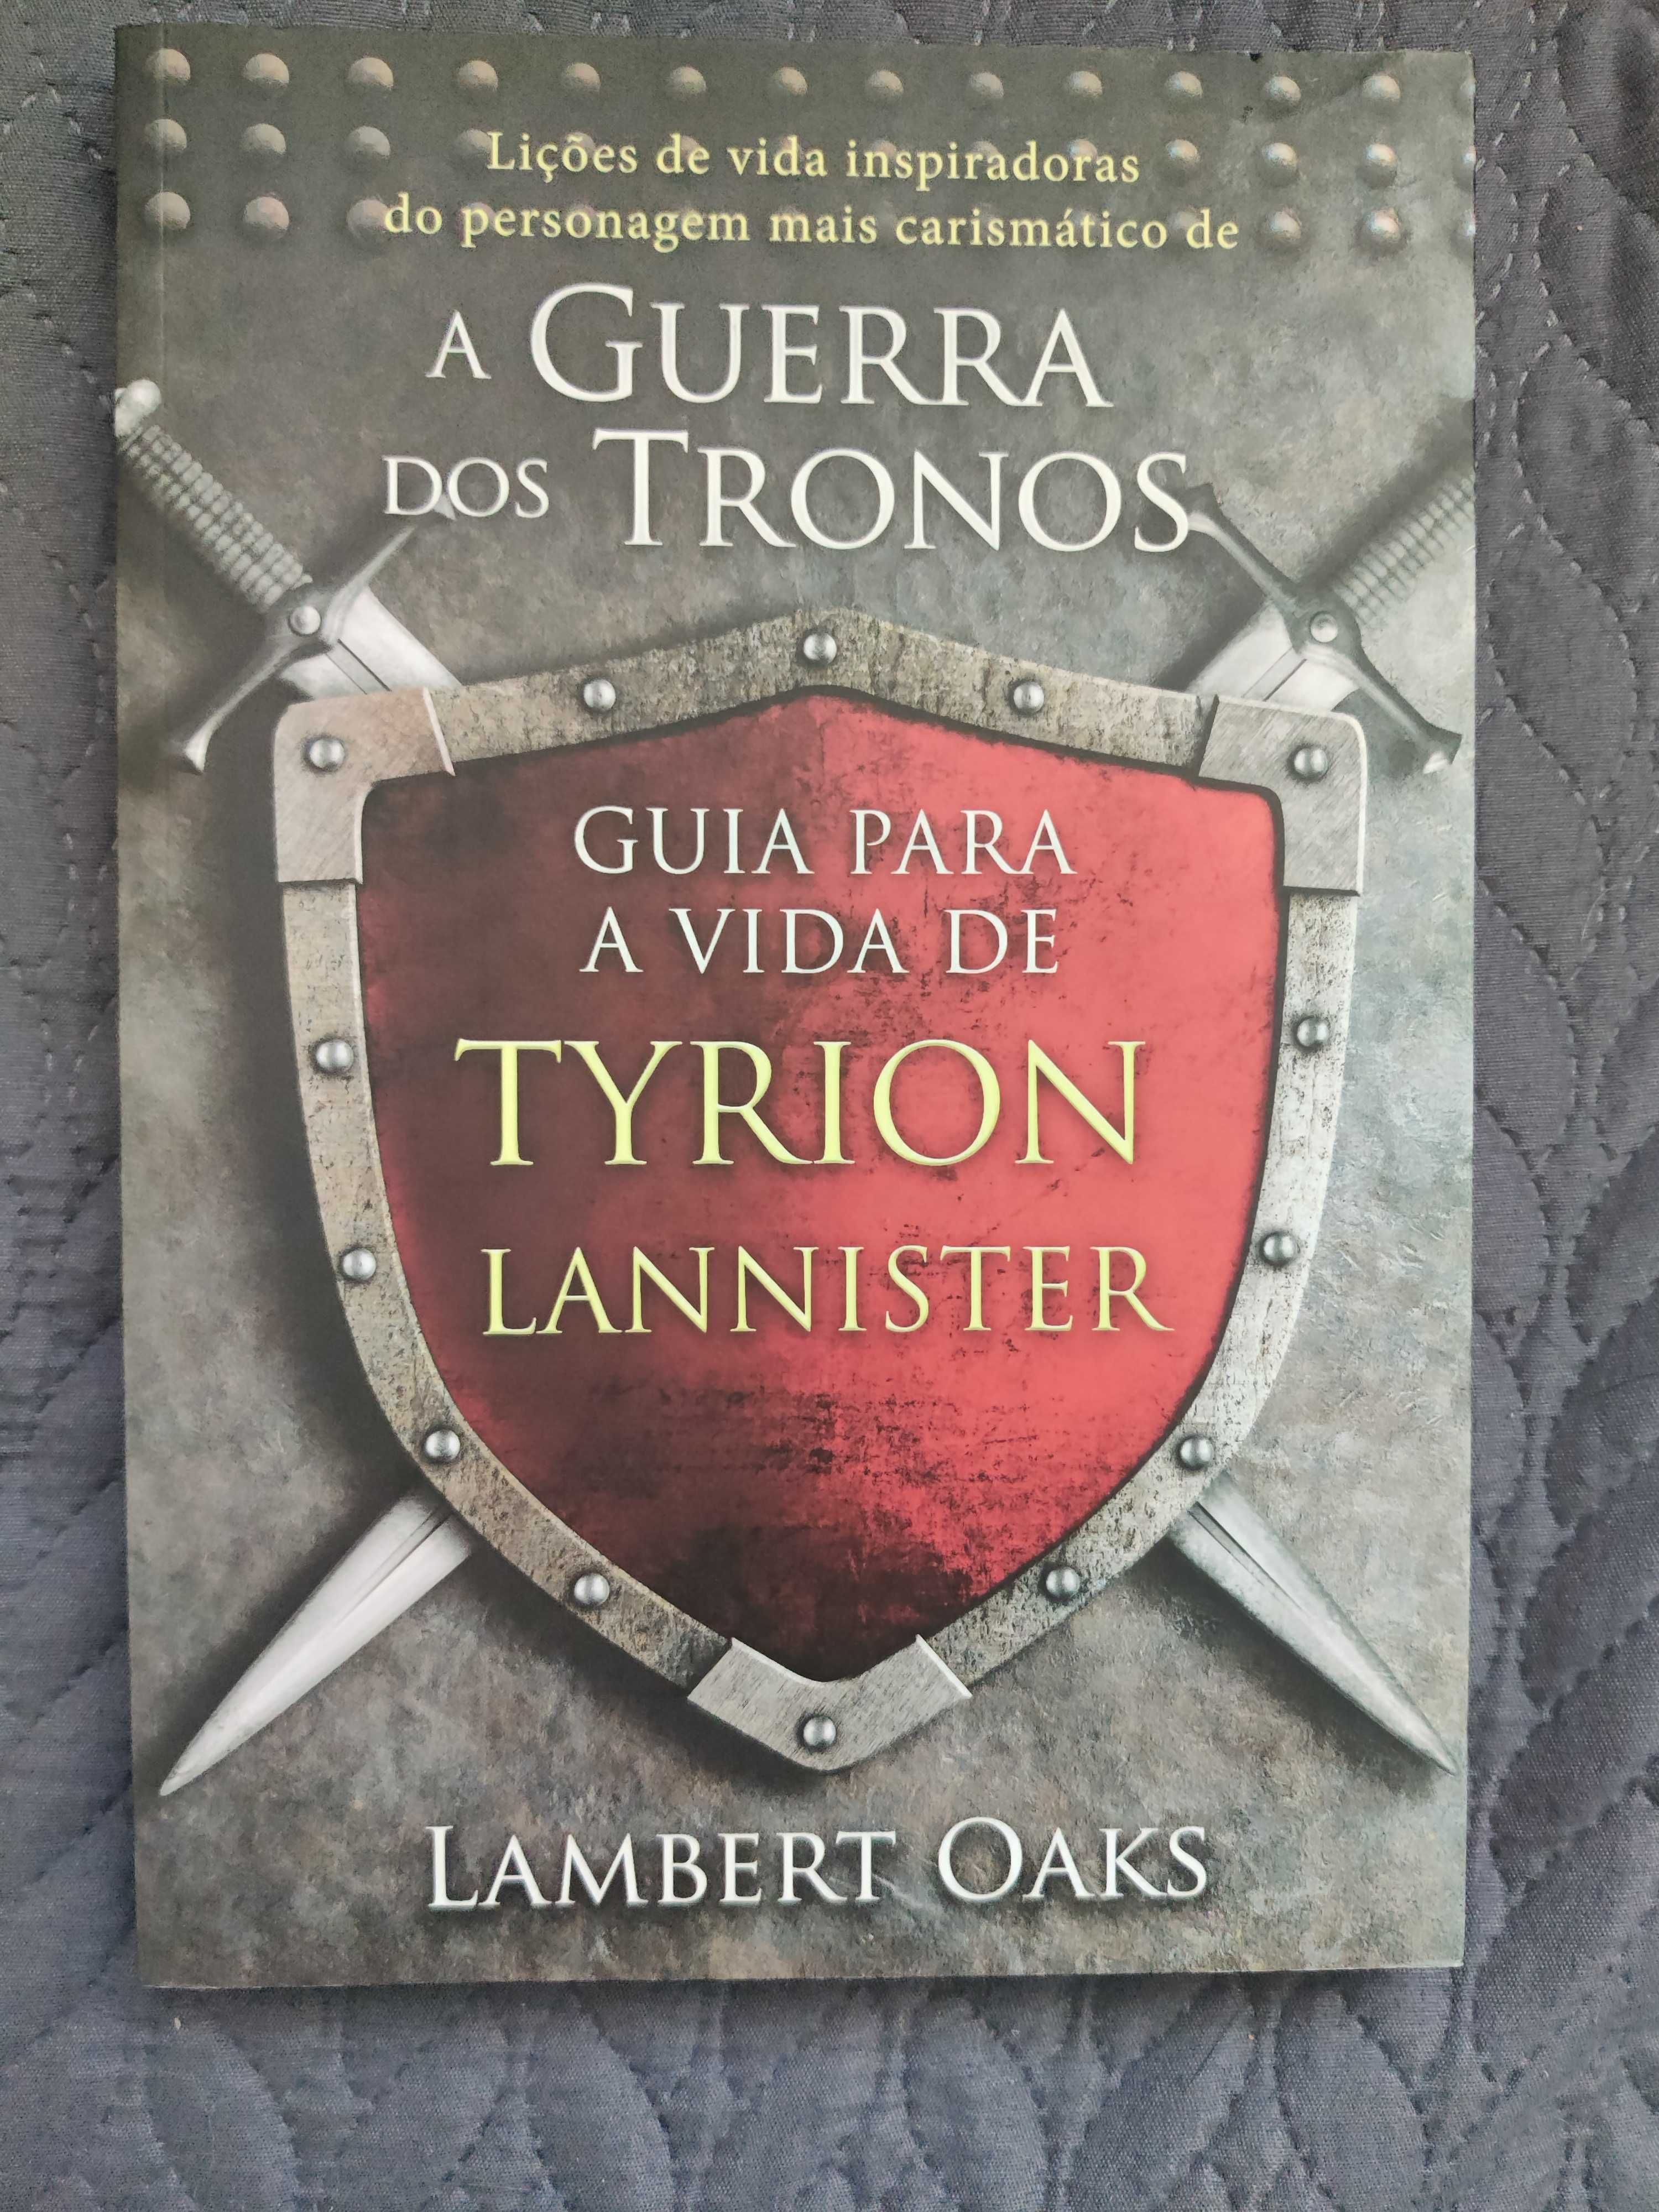 Livro "Guia para a vida por Tyrion Lannister" de Lambert Oaks